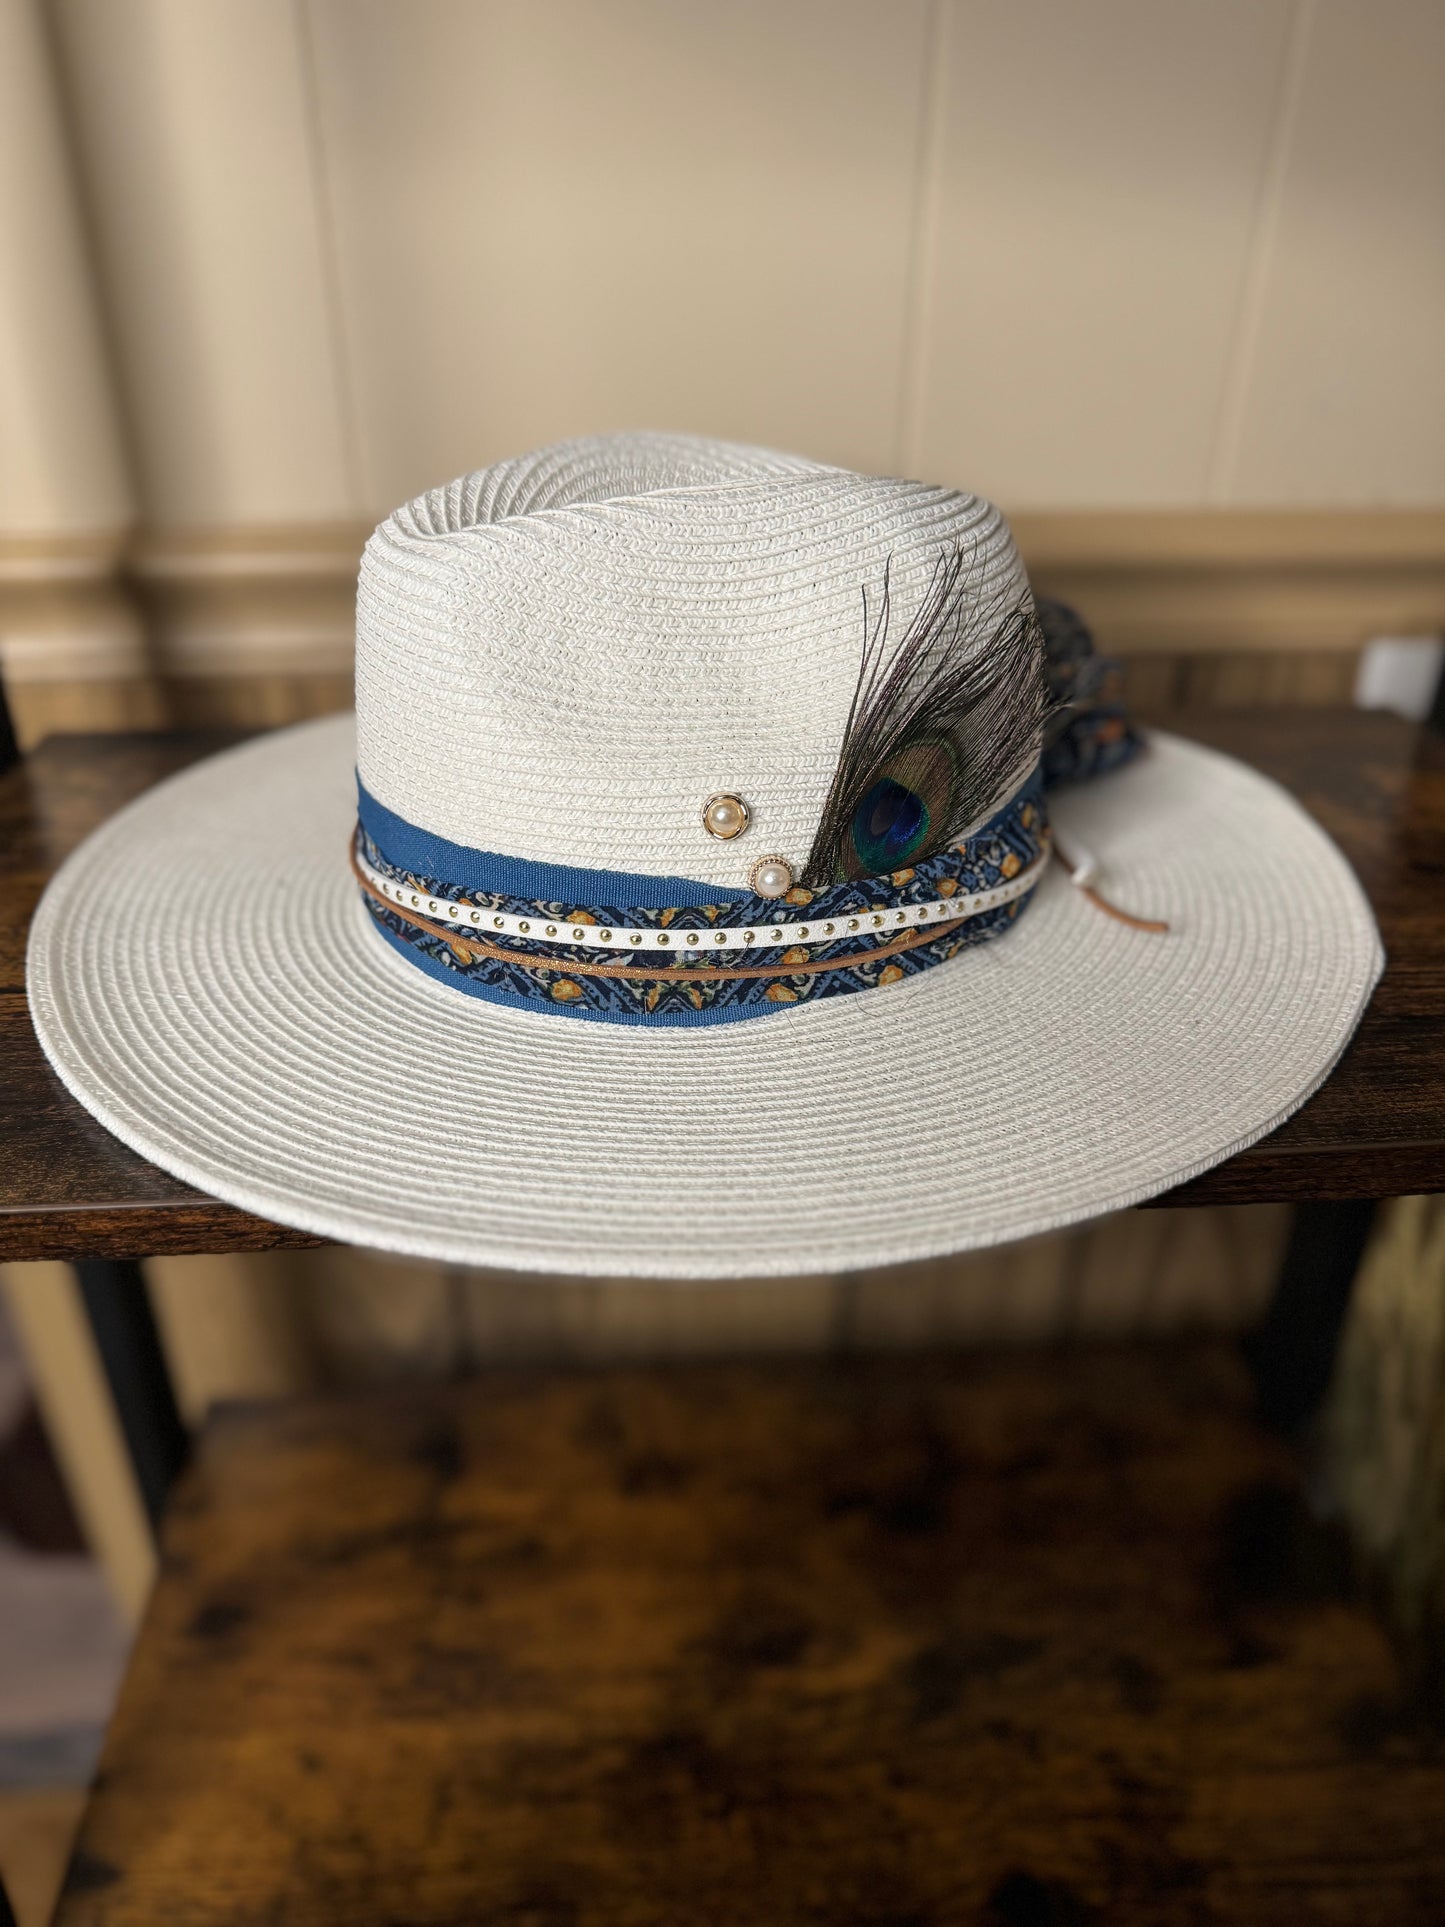 The Dallas Straw Hat